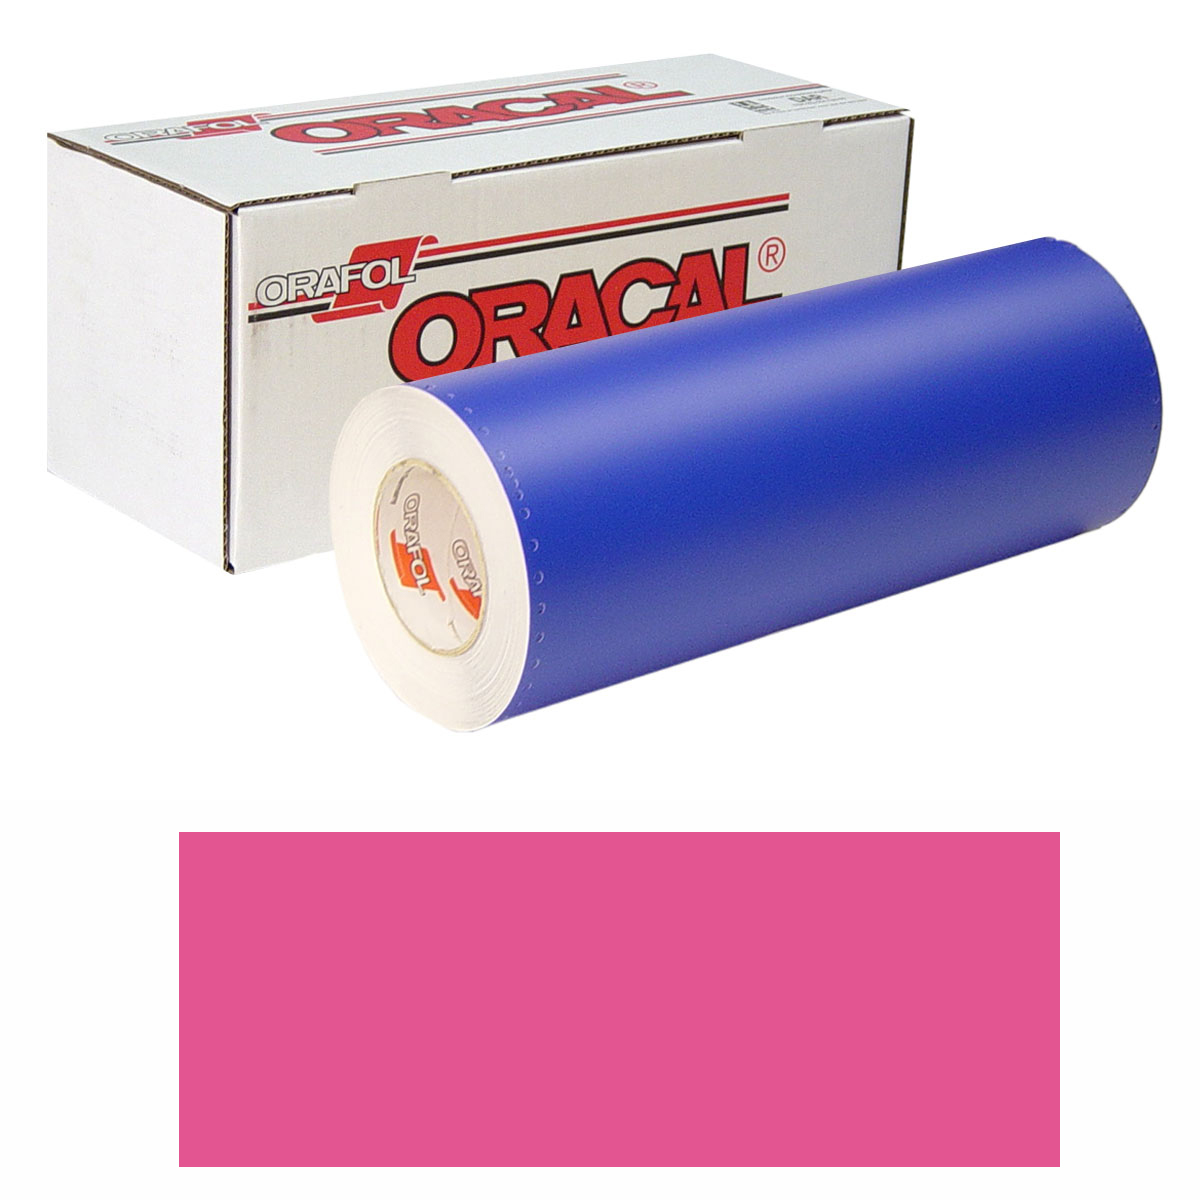 ORACAL 8300 Unp 24in X 10yd 041 Pink